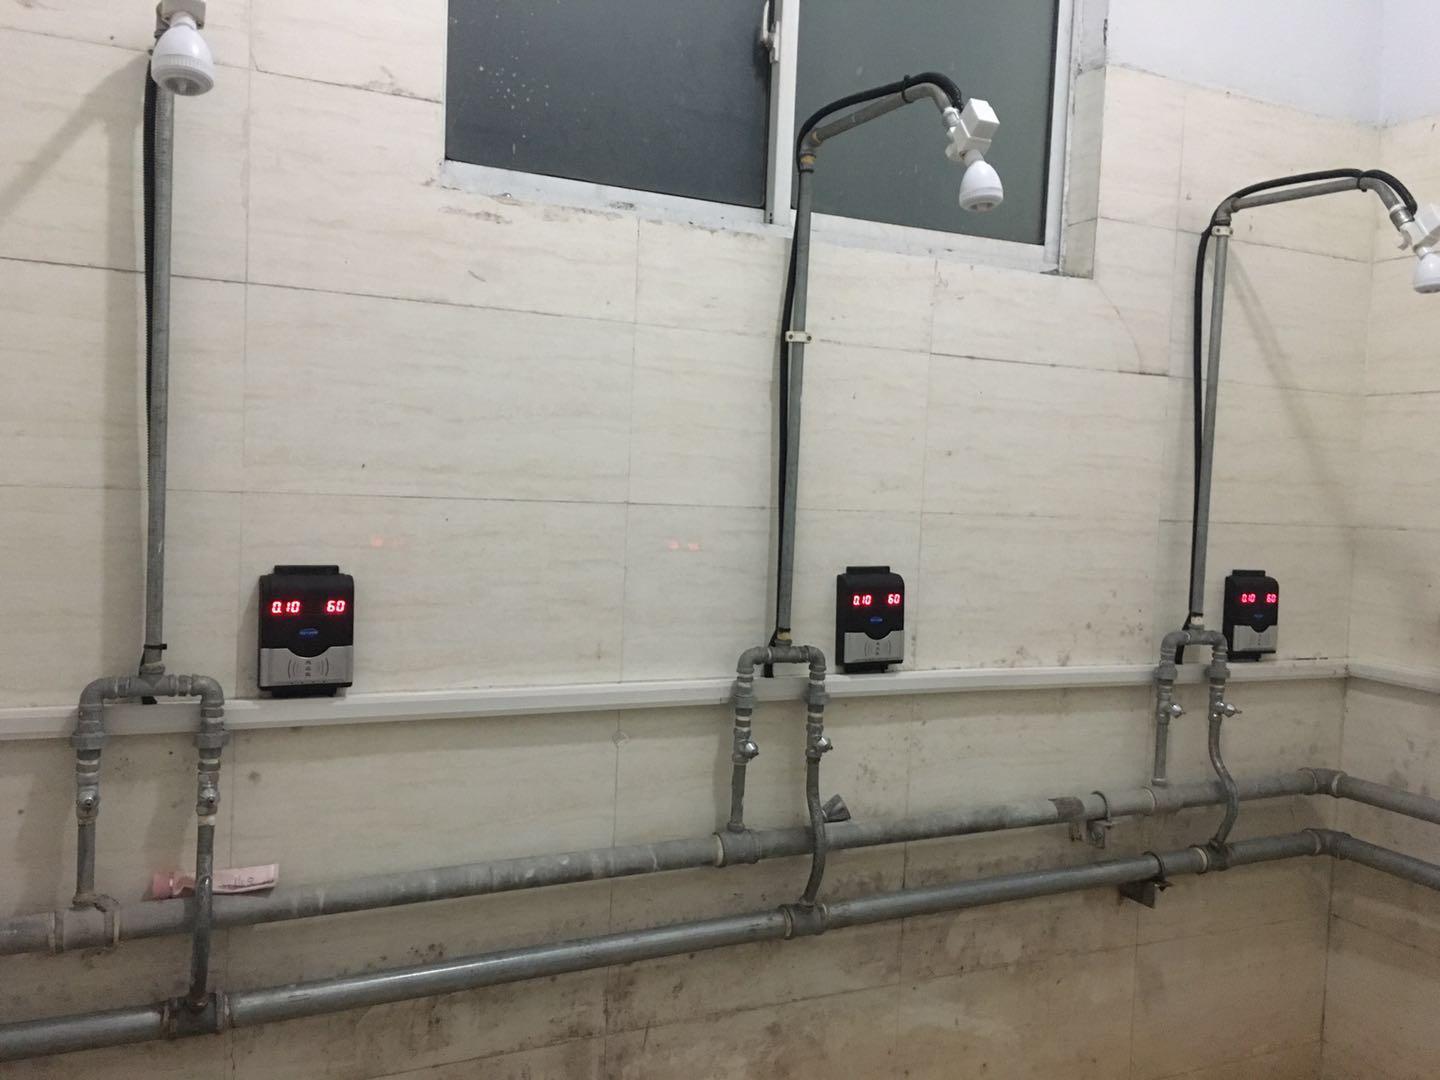 智能卡计费热水系统 插卡浴室收费机 高校洗澡水控机